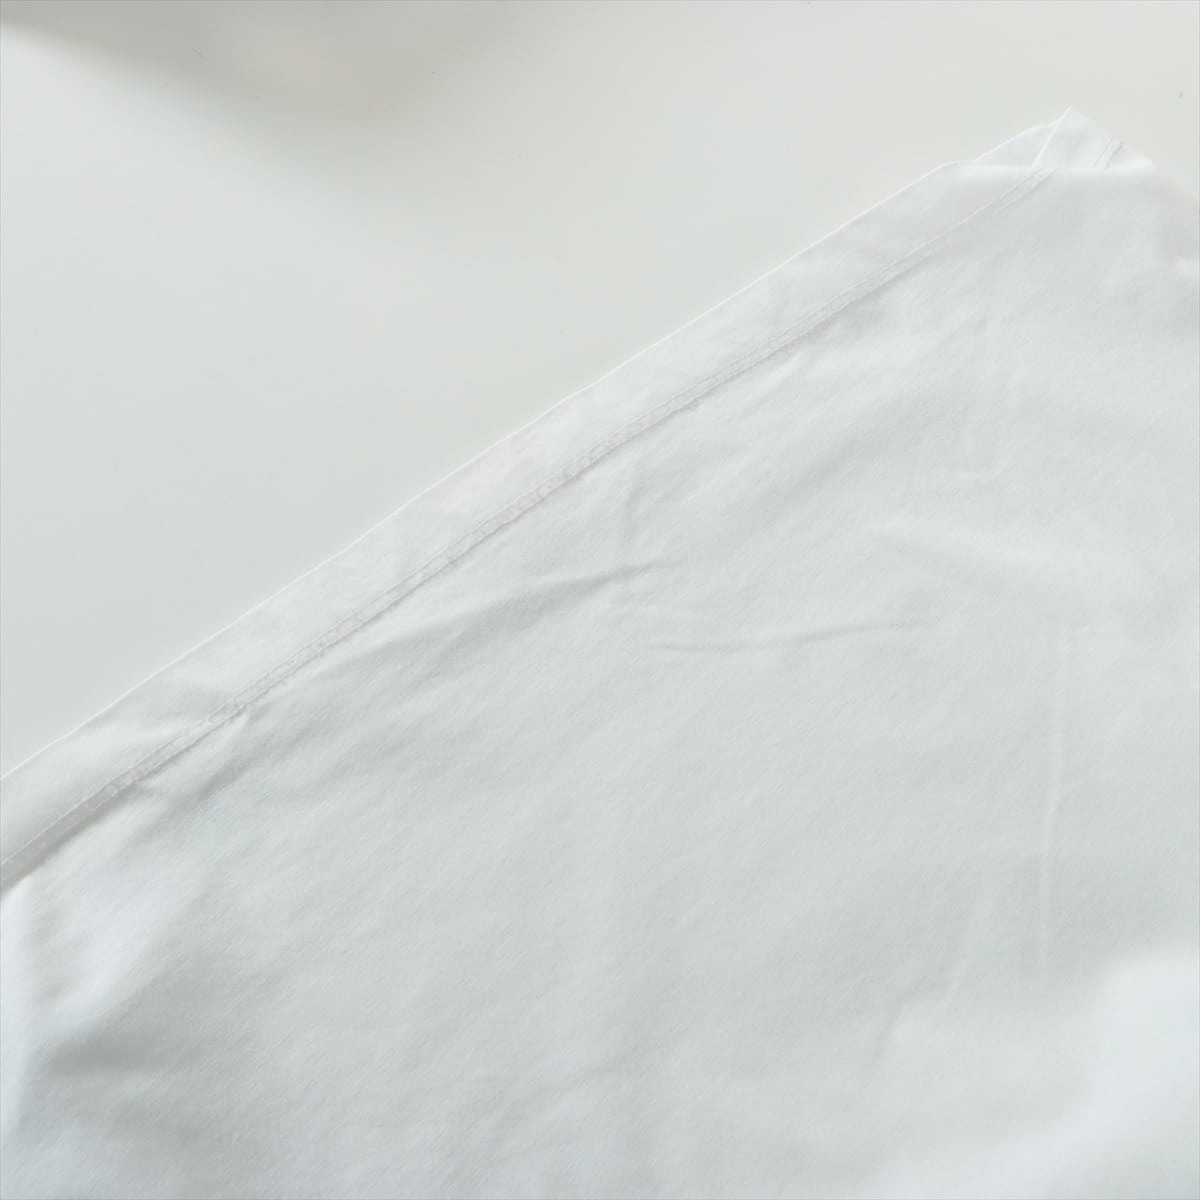 メゾンマルジェラ 18年 コットン Tシャツ XS メンズ ホワイト  S30GJ0006 エイズ